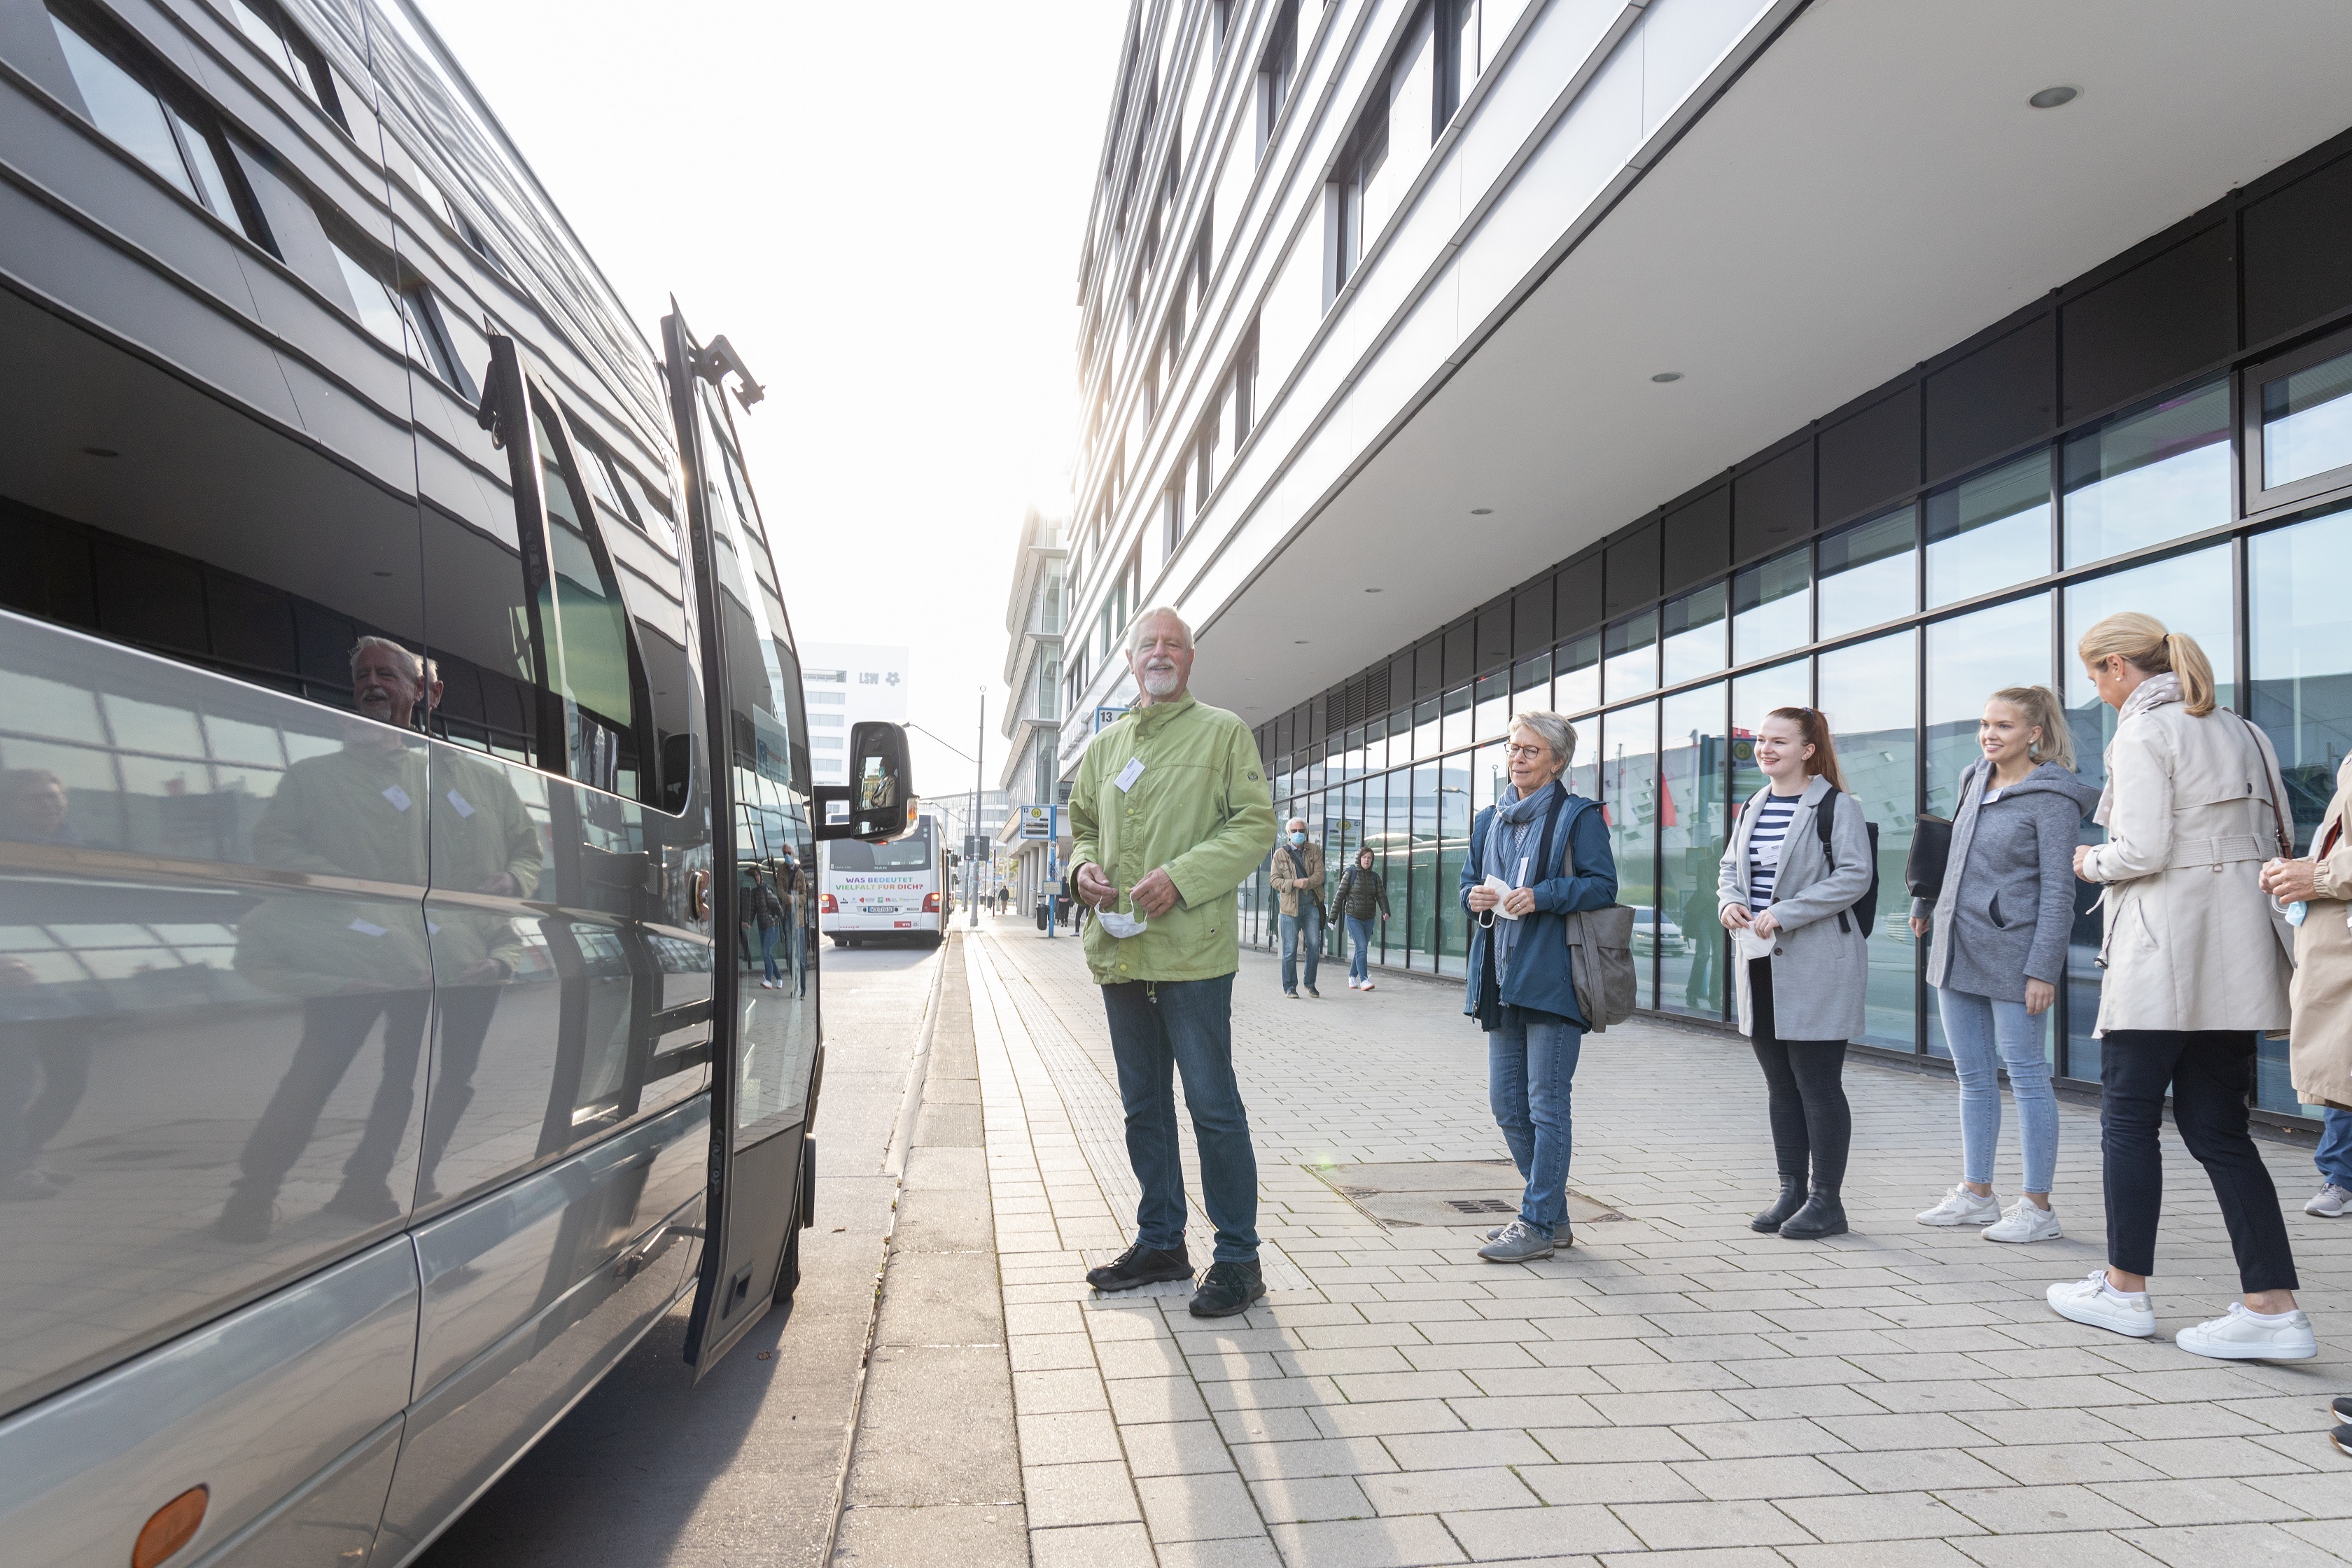 Stadtrundfahrt durch Wolfsburg, Gäste warten vor dem Bus